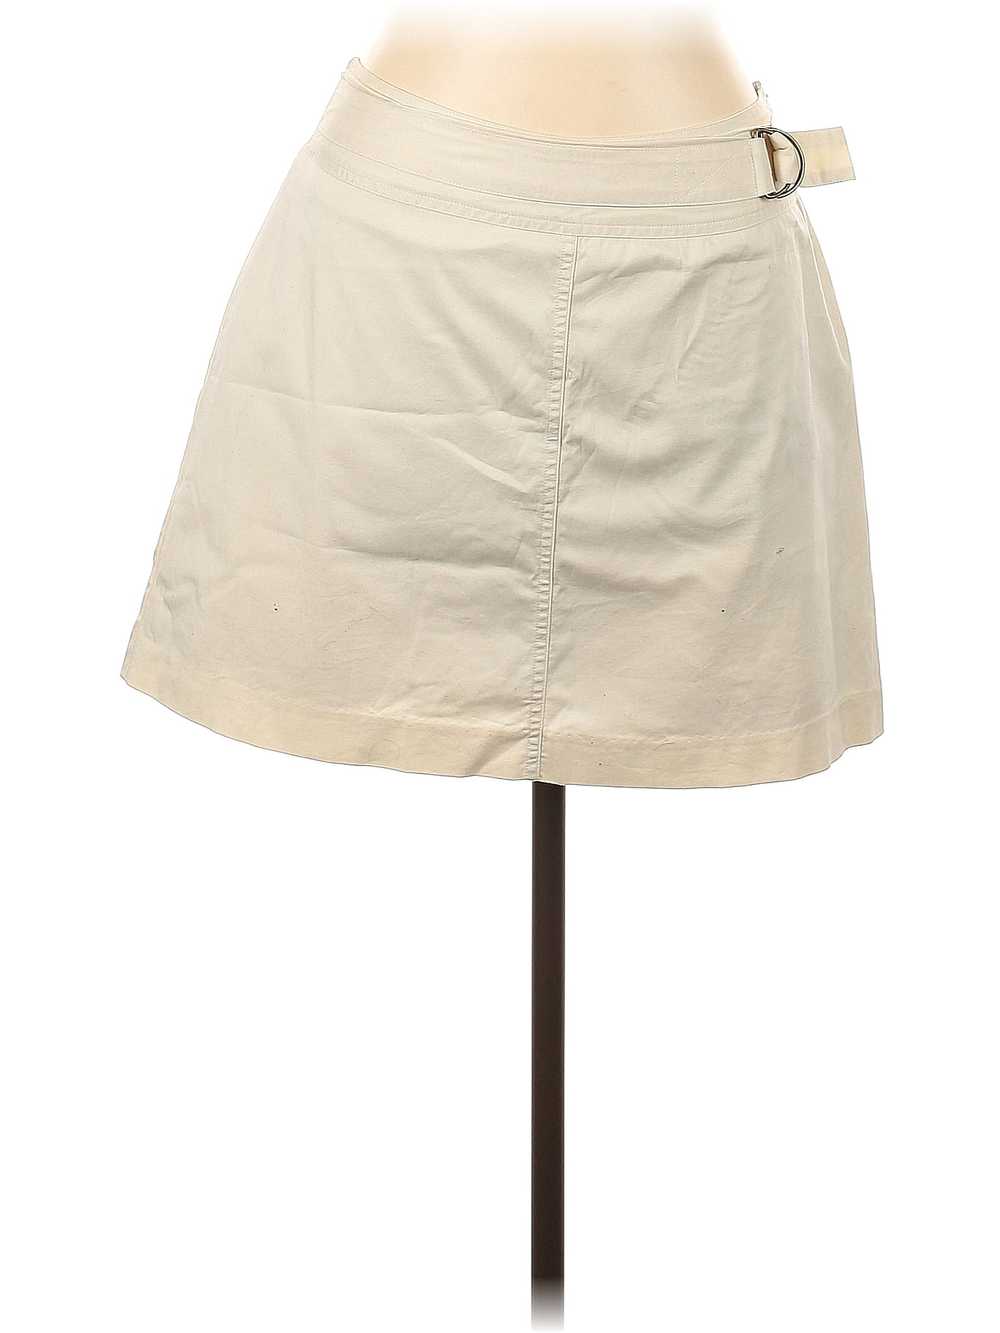 St. John's Bay Women Ivory Casual Skirt 10 - image 1